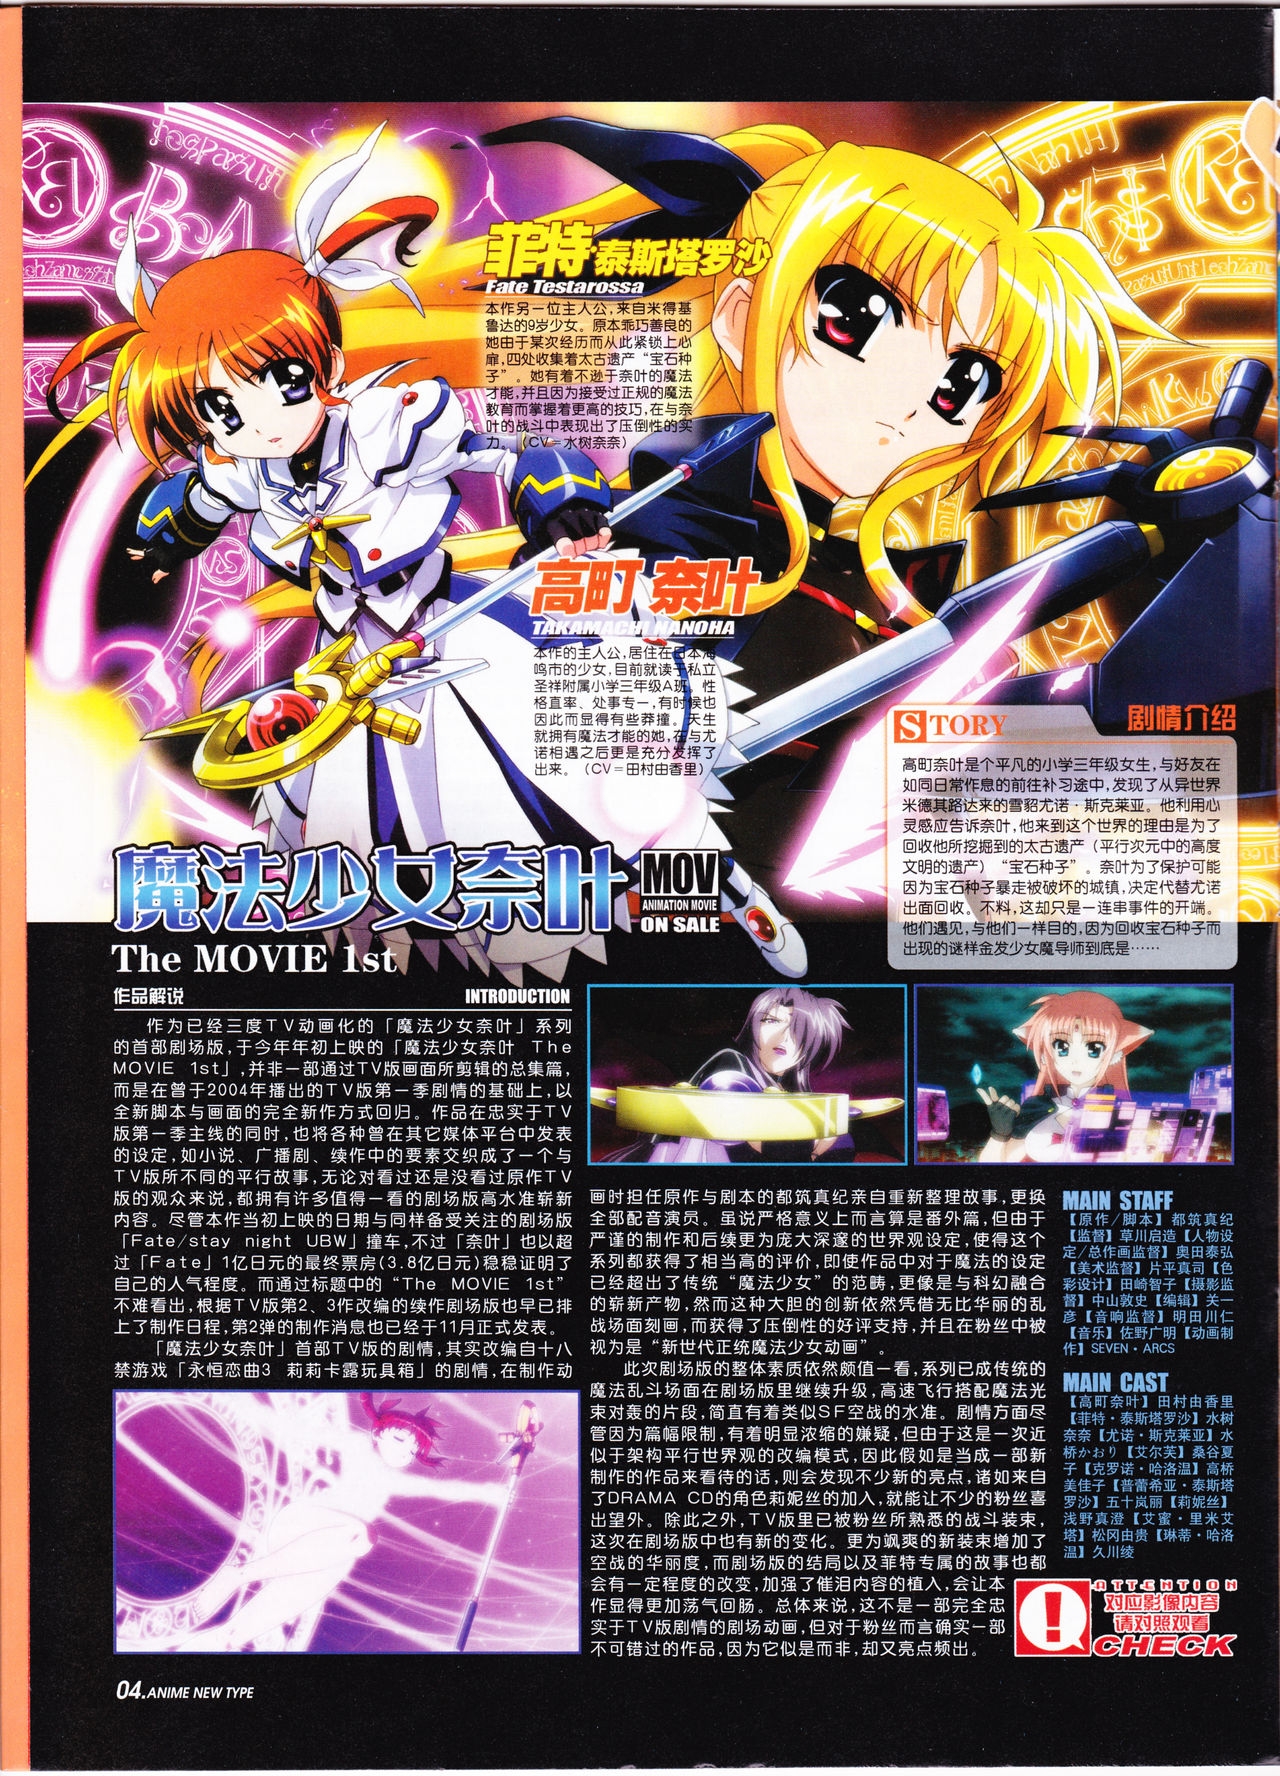 Anime New Type Vol.095 5